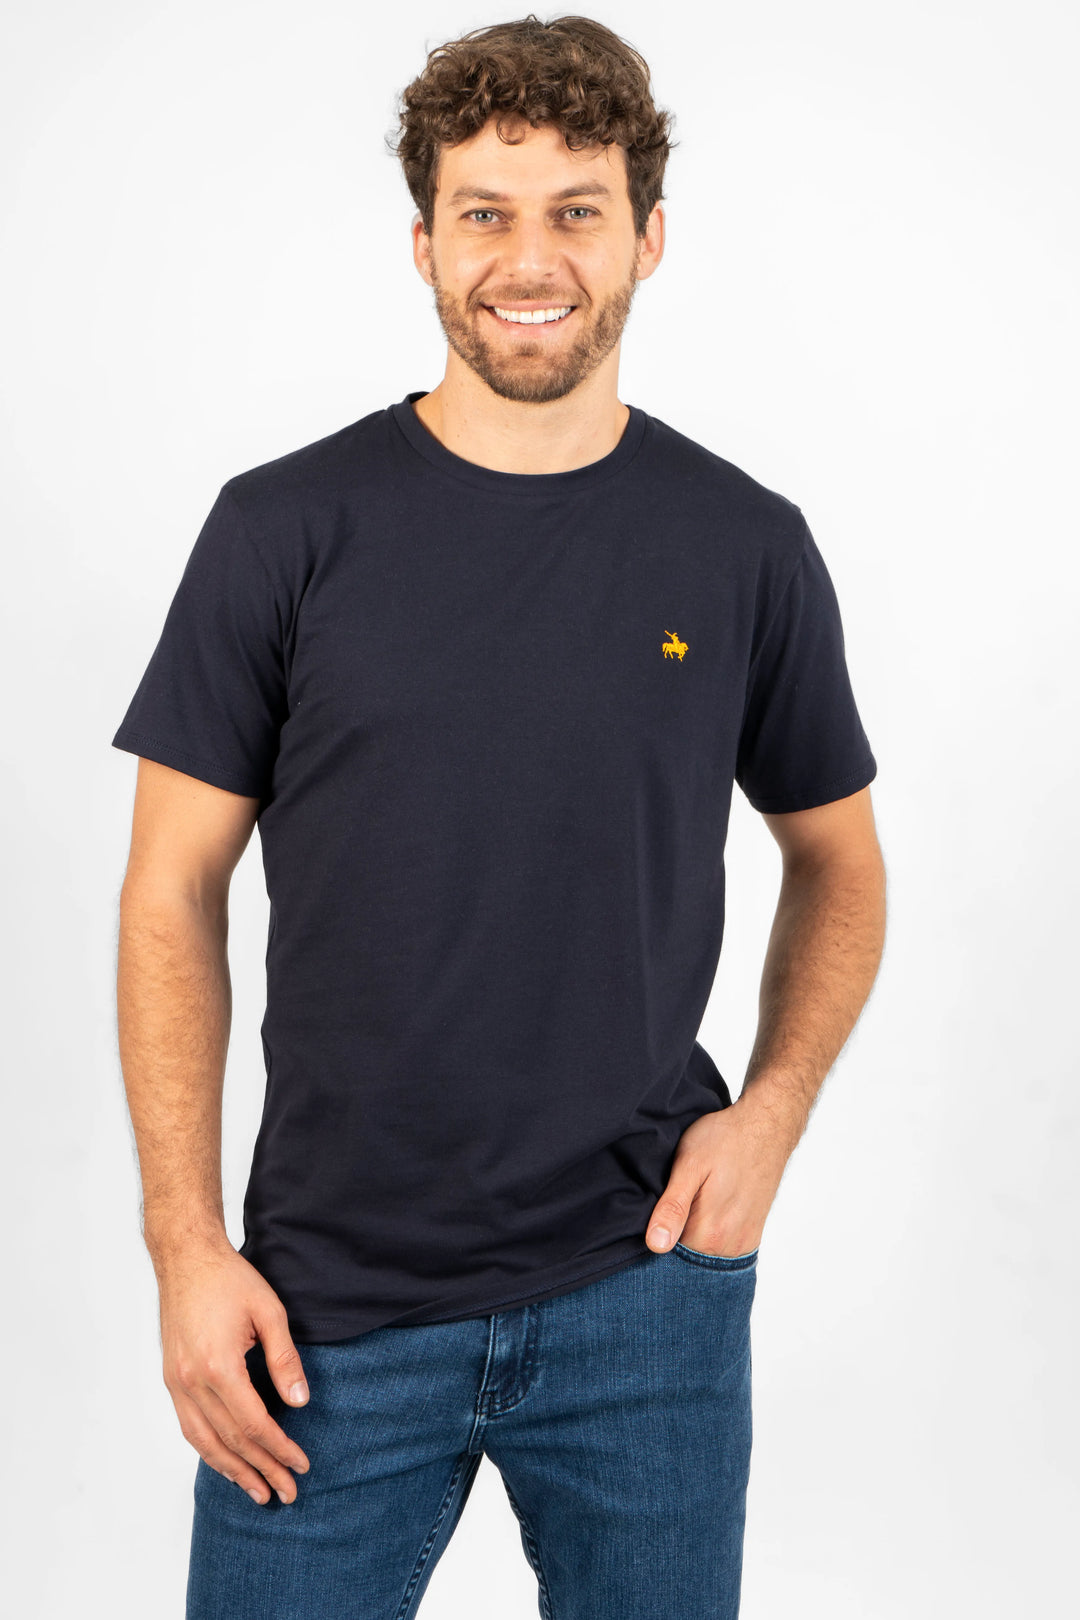 Camiseta para hombre azul oscuro, logo bordado amarillo. Cuello redondo, manga corta